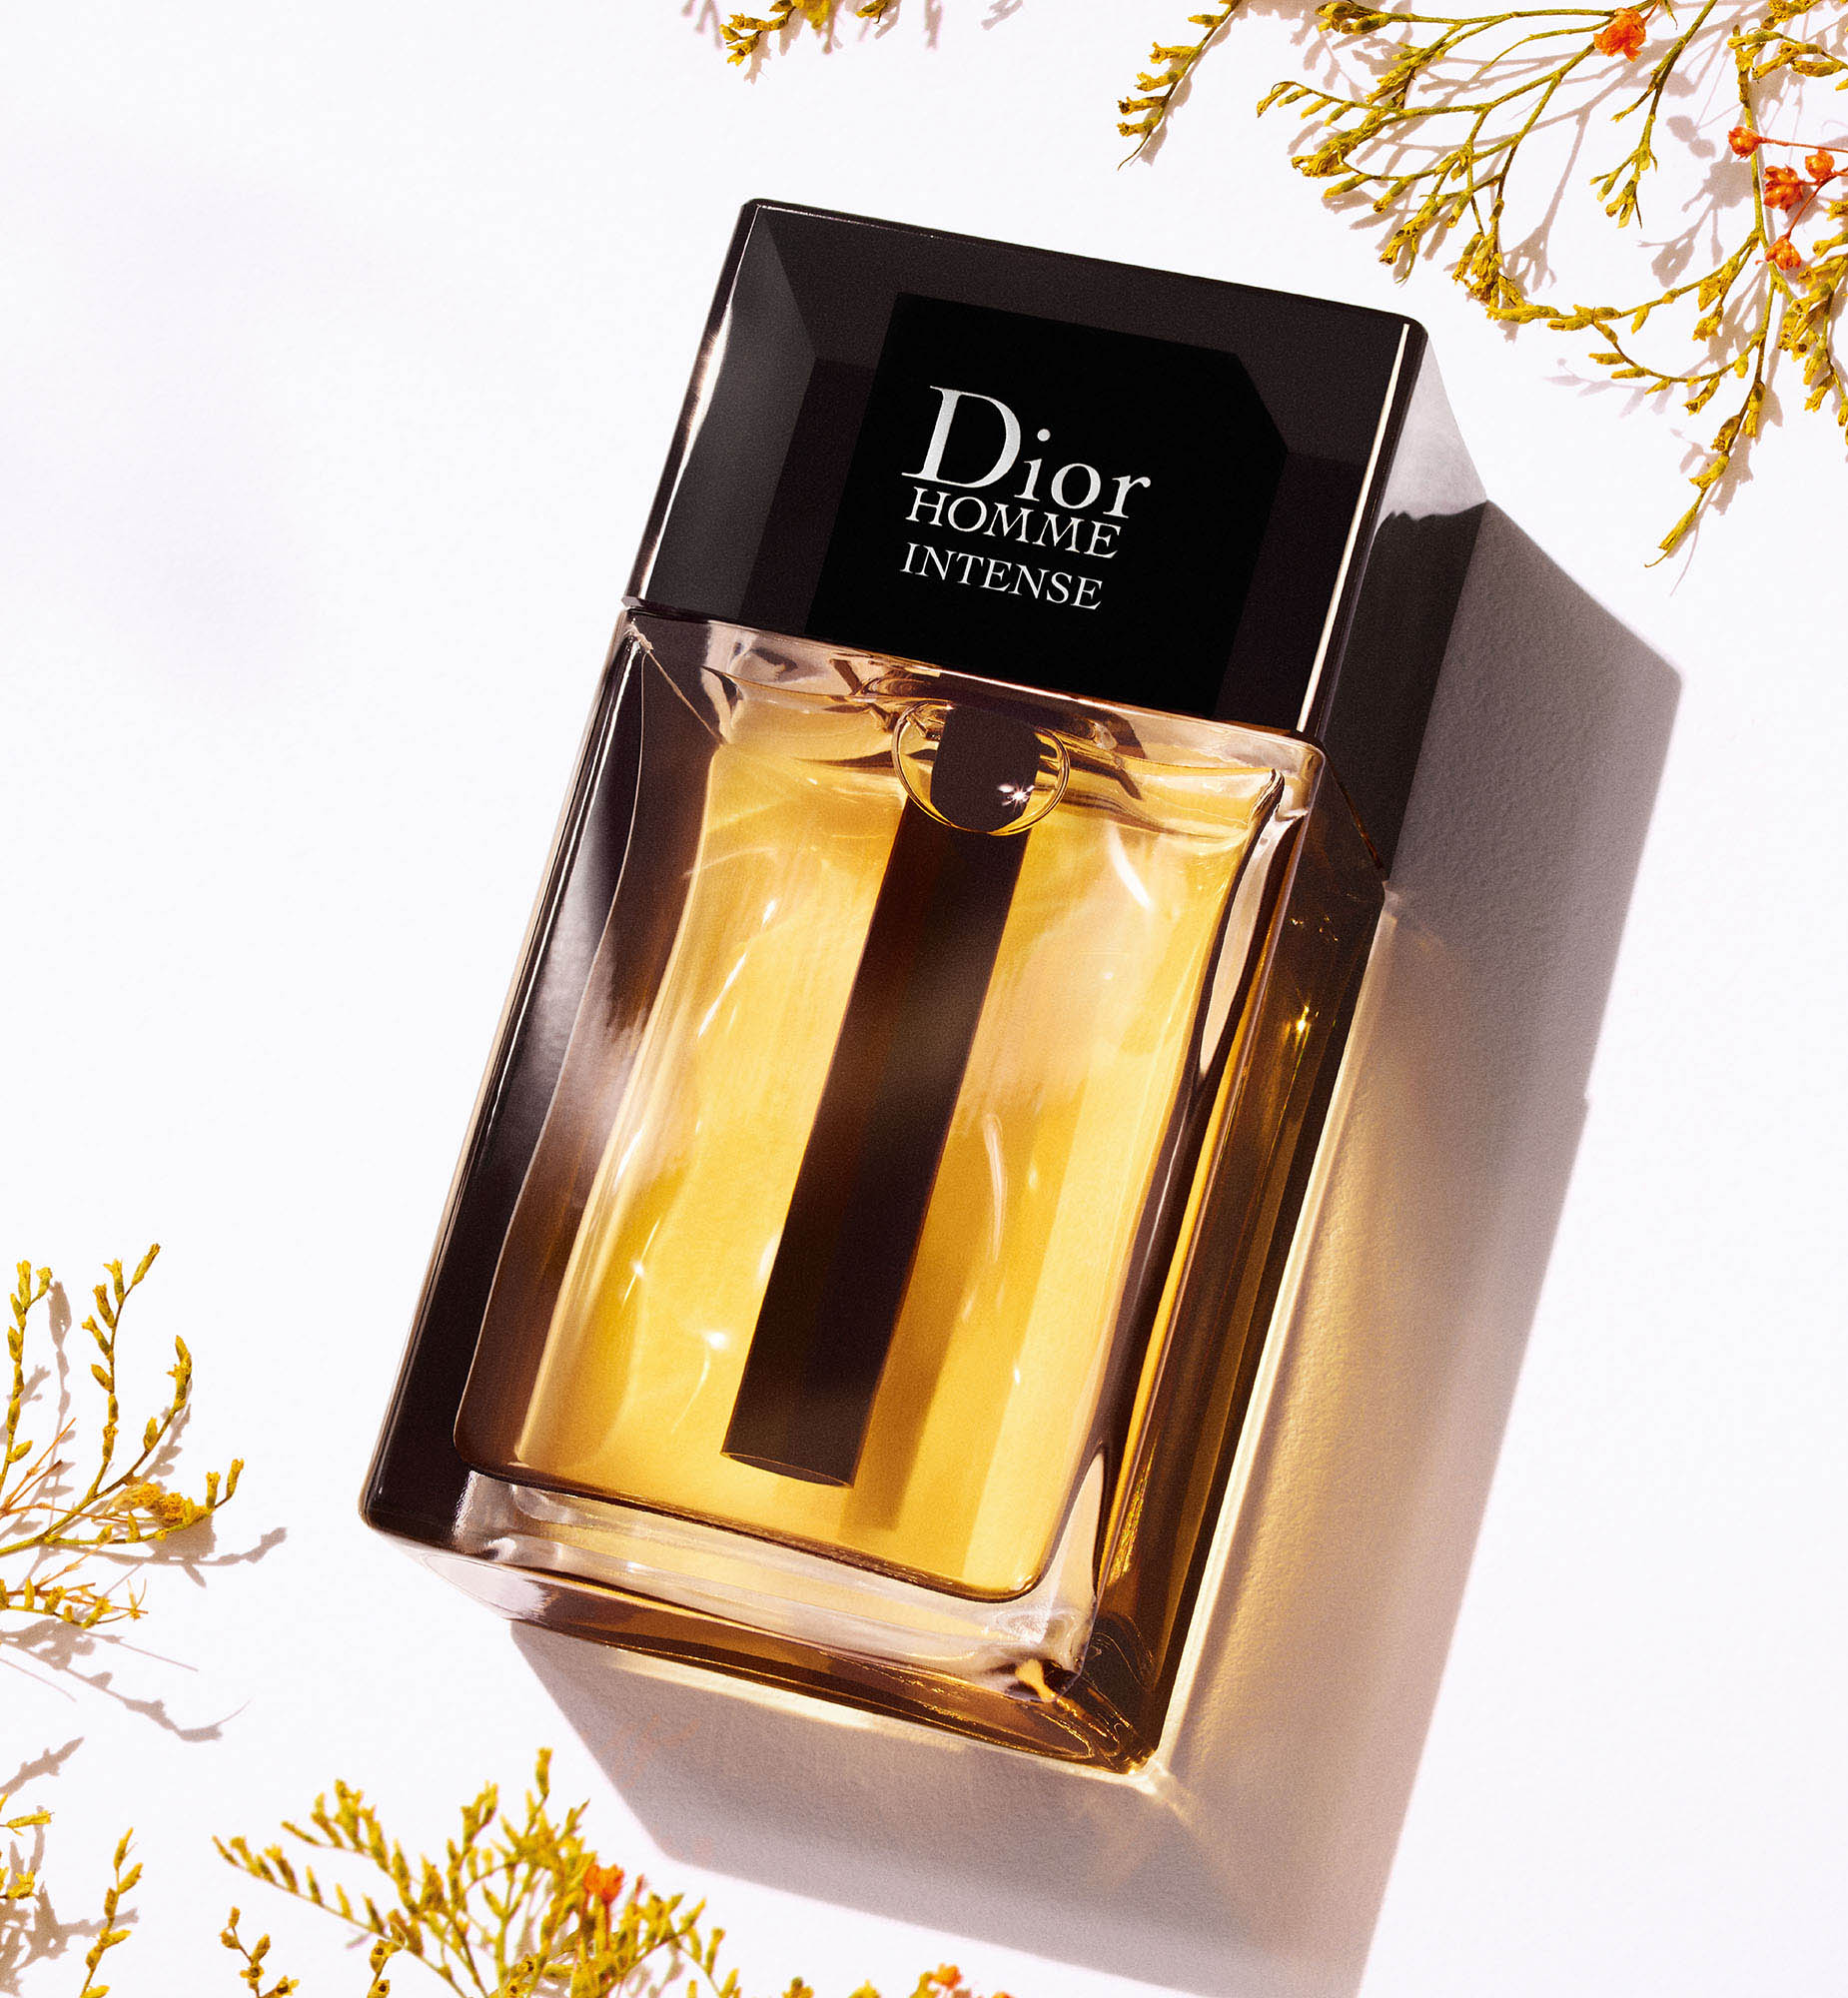 น้ำหอมผู้ชาย DIOR HOMME INTENSE—Eau de Parfum intense—น้ำหอมผู้ชาย กลิ่นชัดและทรงพลัง ให้ความเย้ายวน